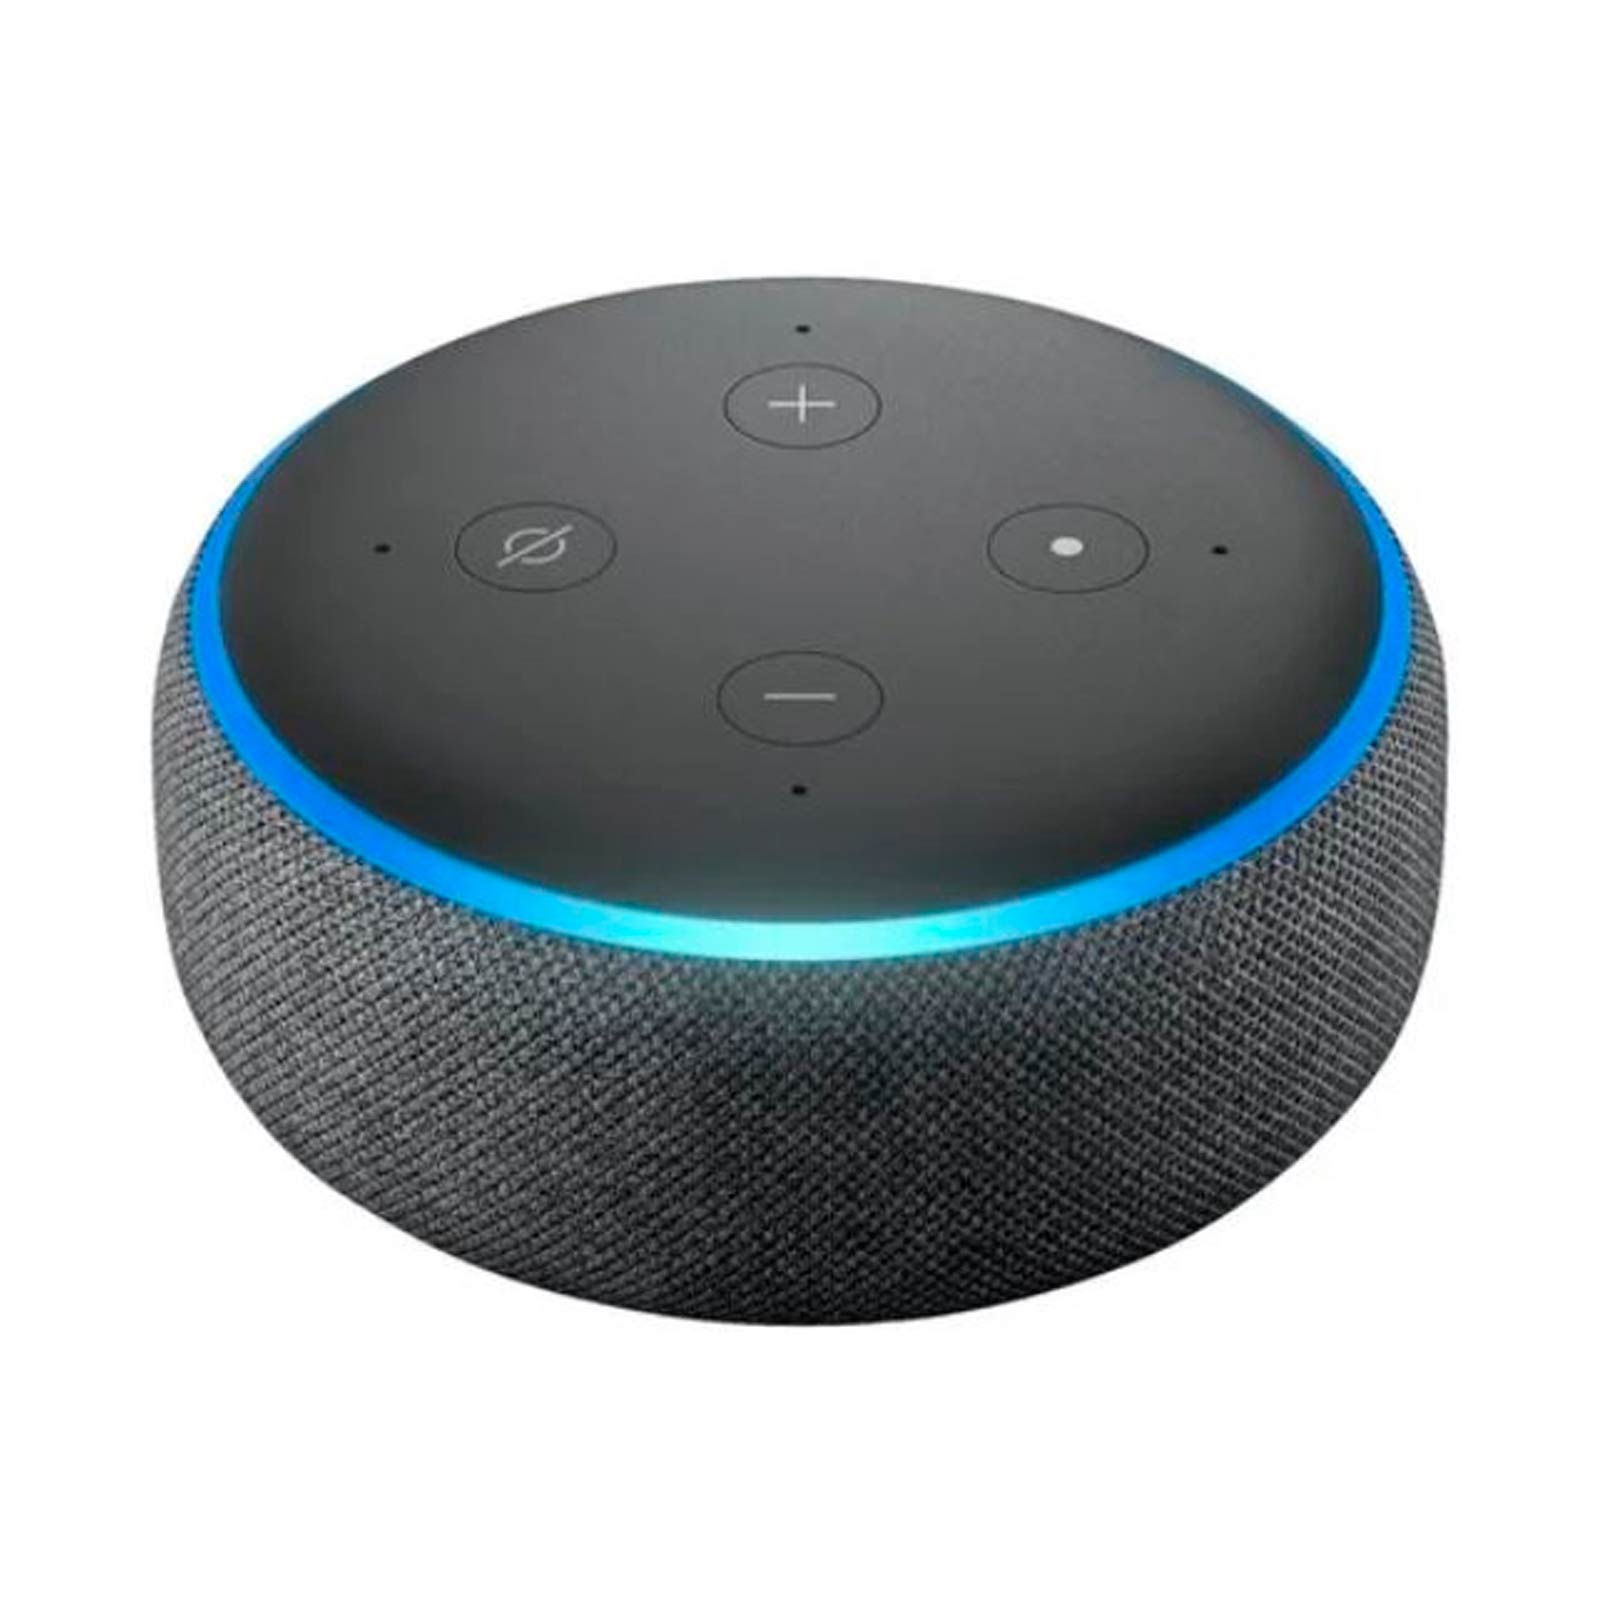 Monje De confianza limpiar Altavoz inteligente Alexa Echo Dot negro de 2.4 W RMS (3ª generación)